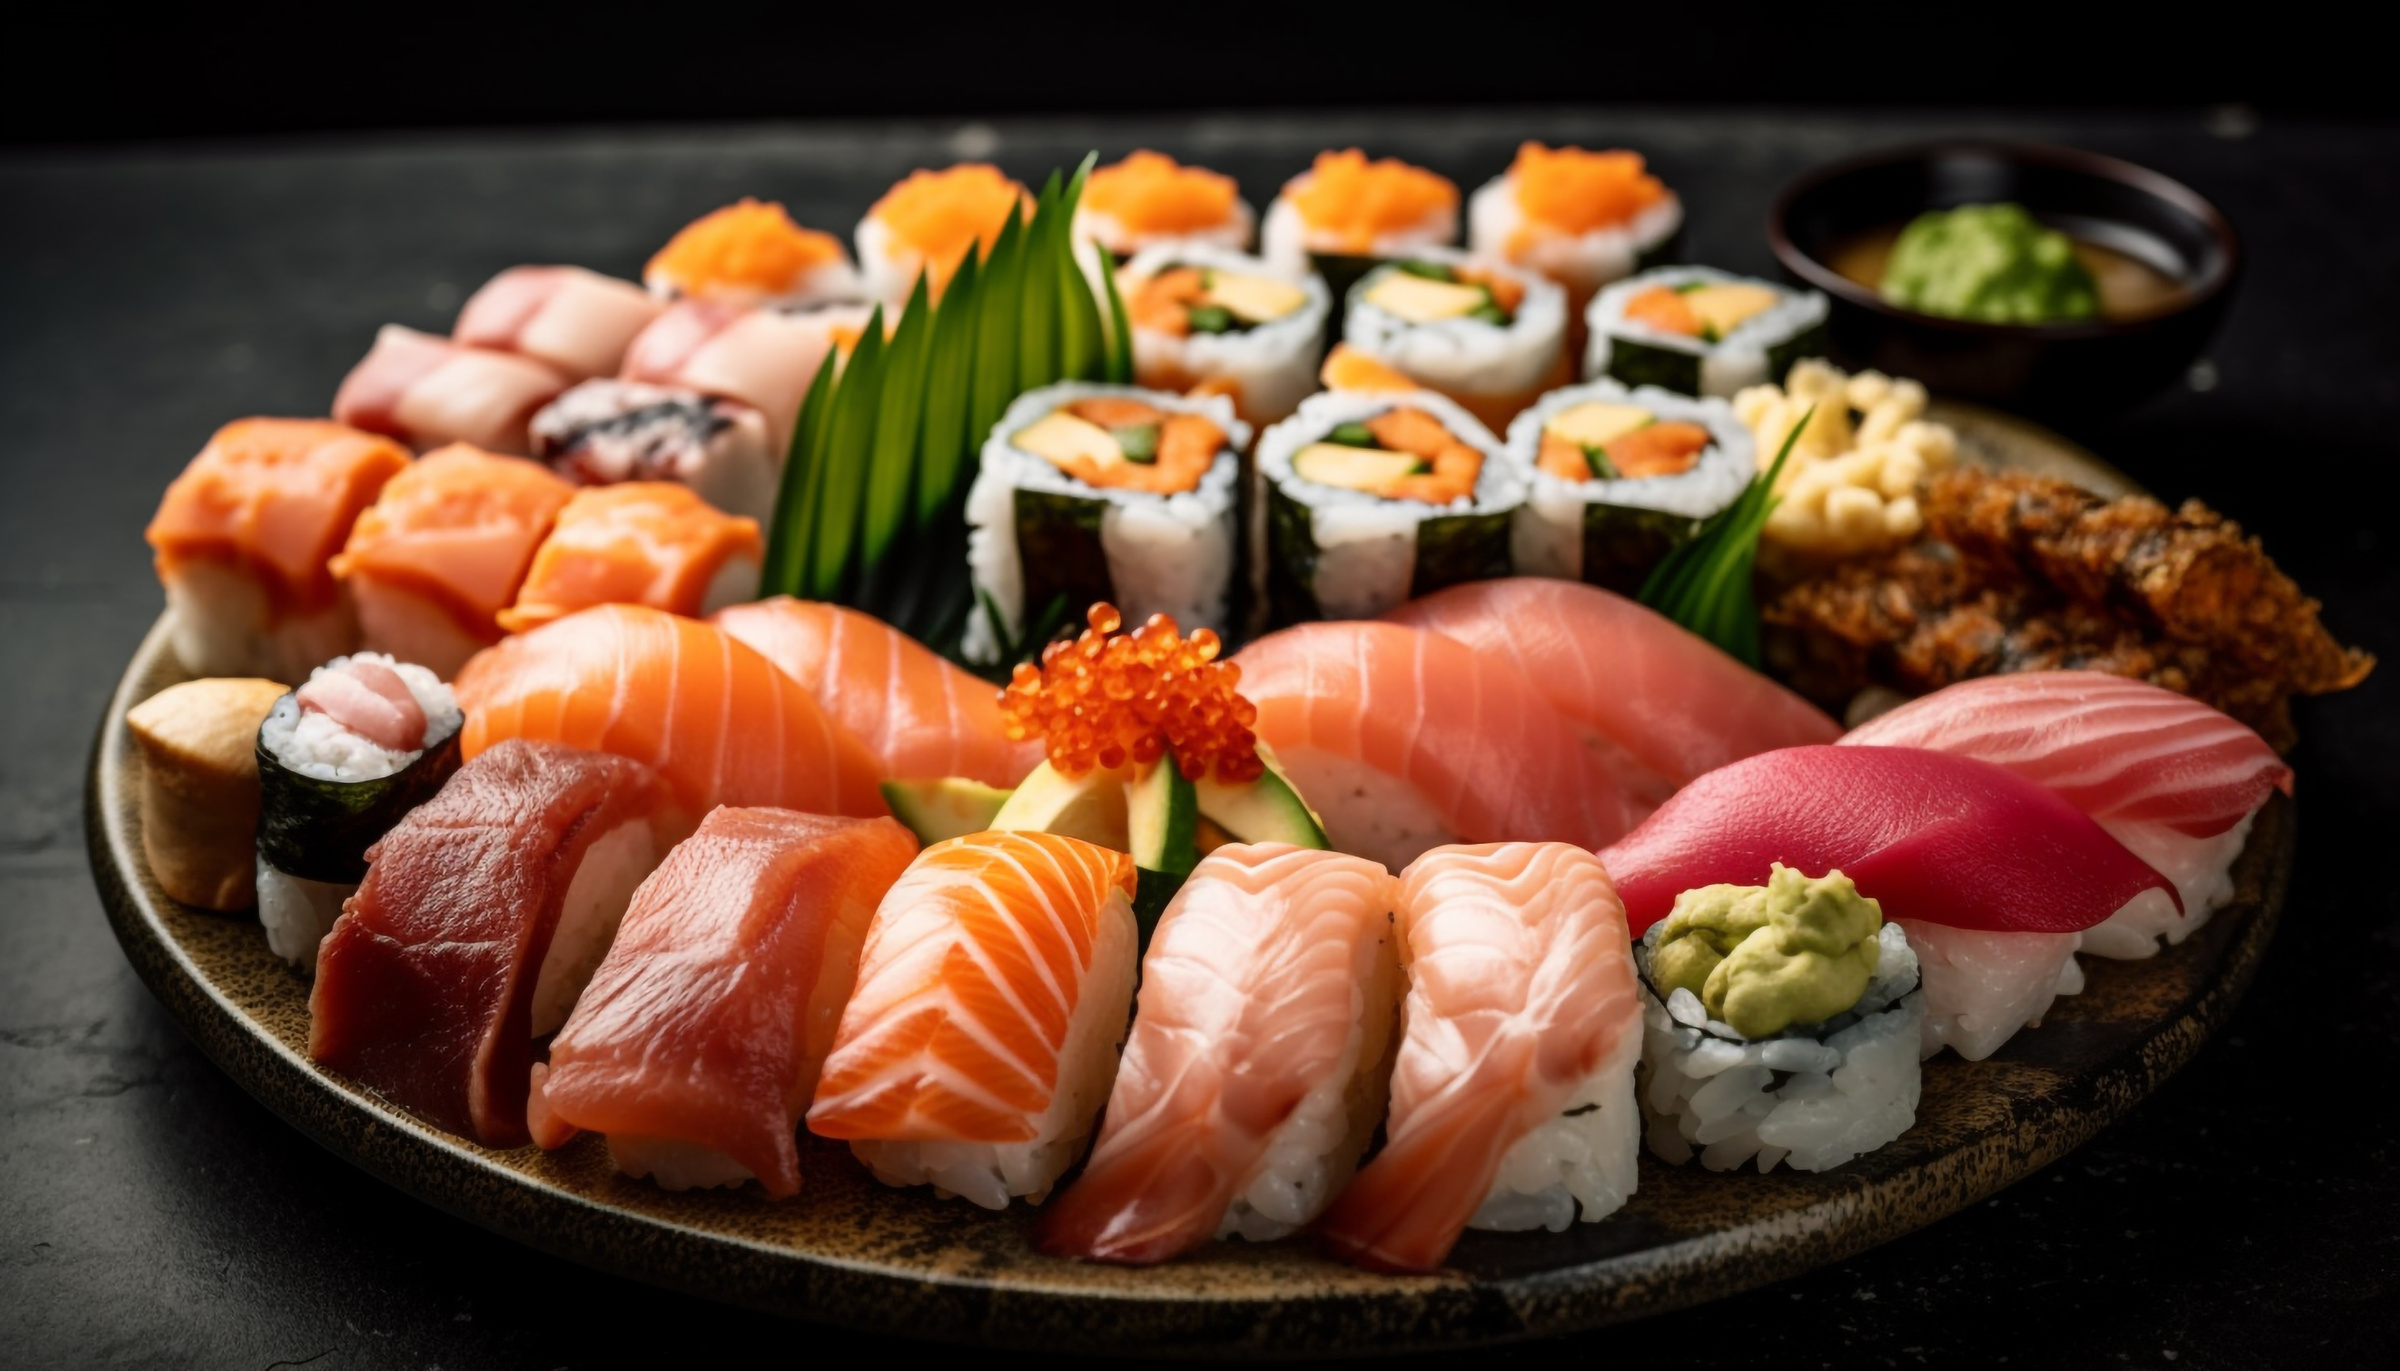 18 июня отмечается Международный день суши. Фото © Freepik / vecstock